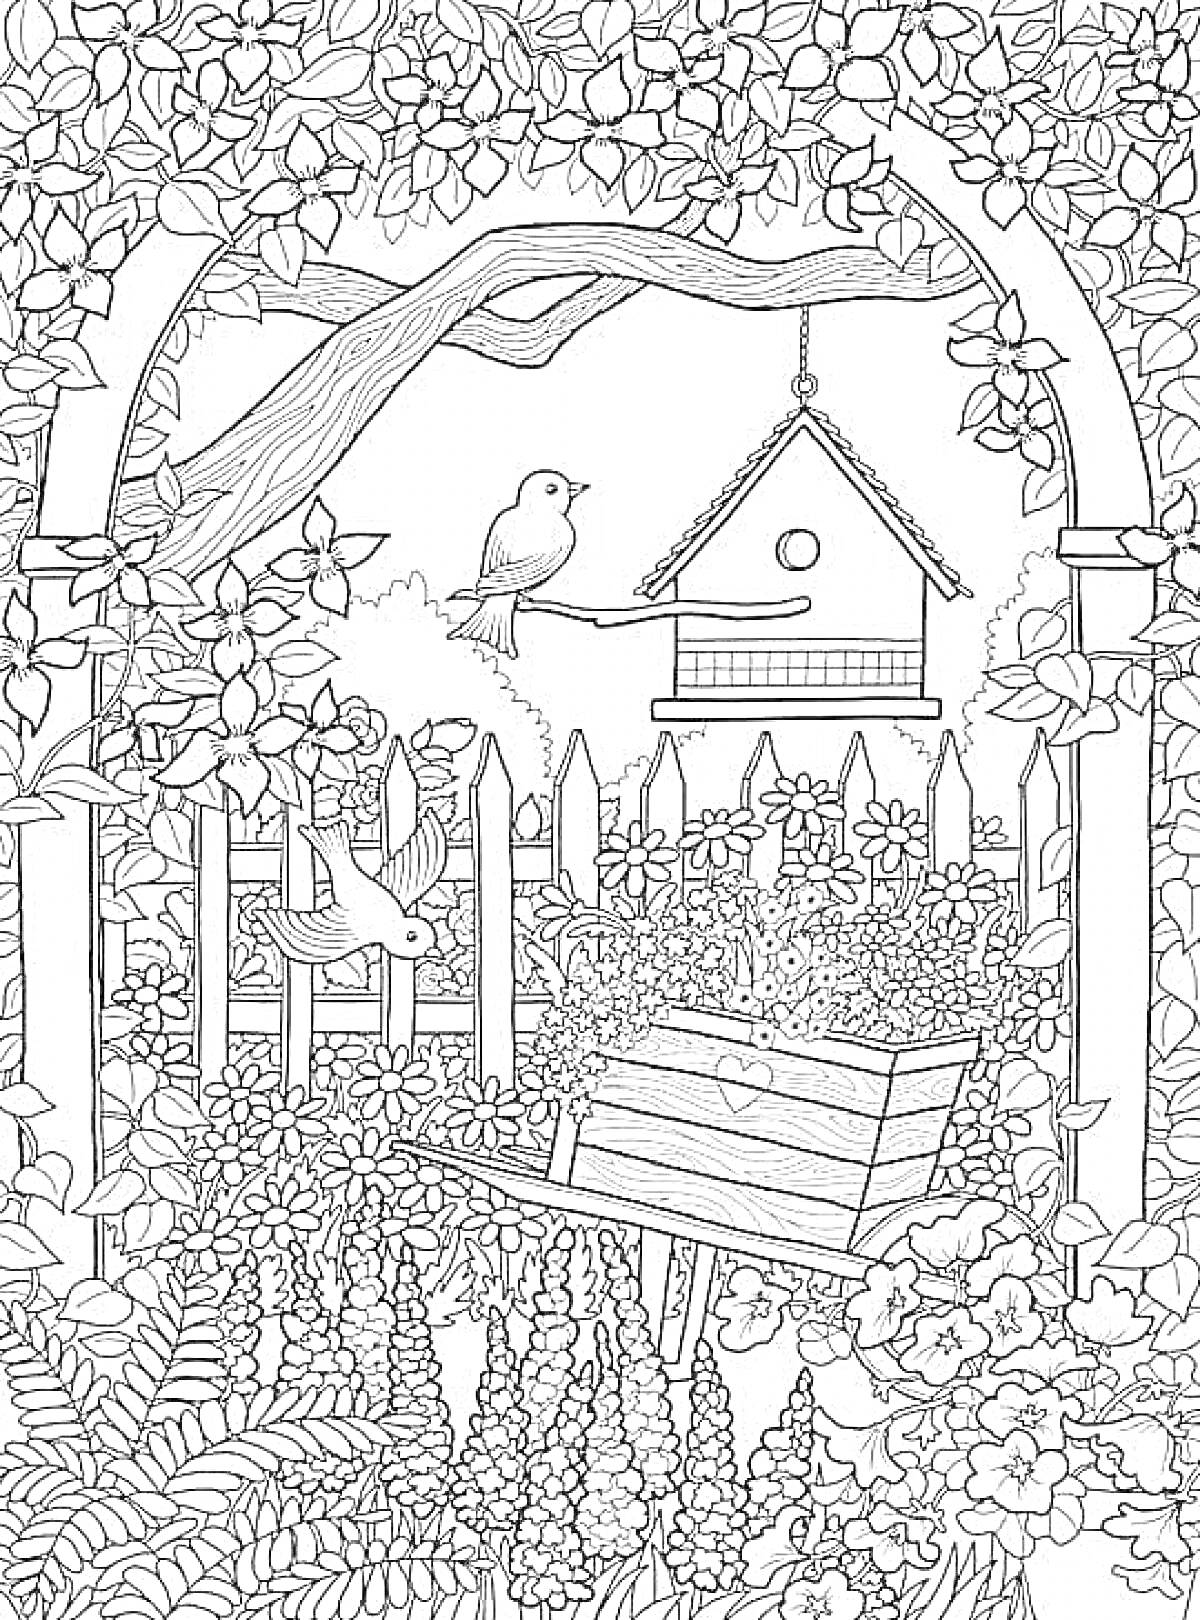 Раскраска Садовая сцена с цветущими растениями, птичьей кормушкой, птицами и скамейкой